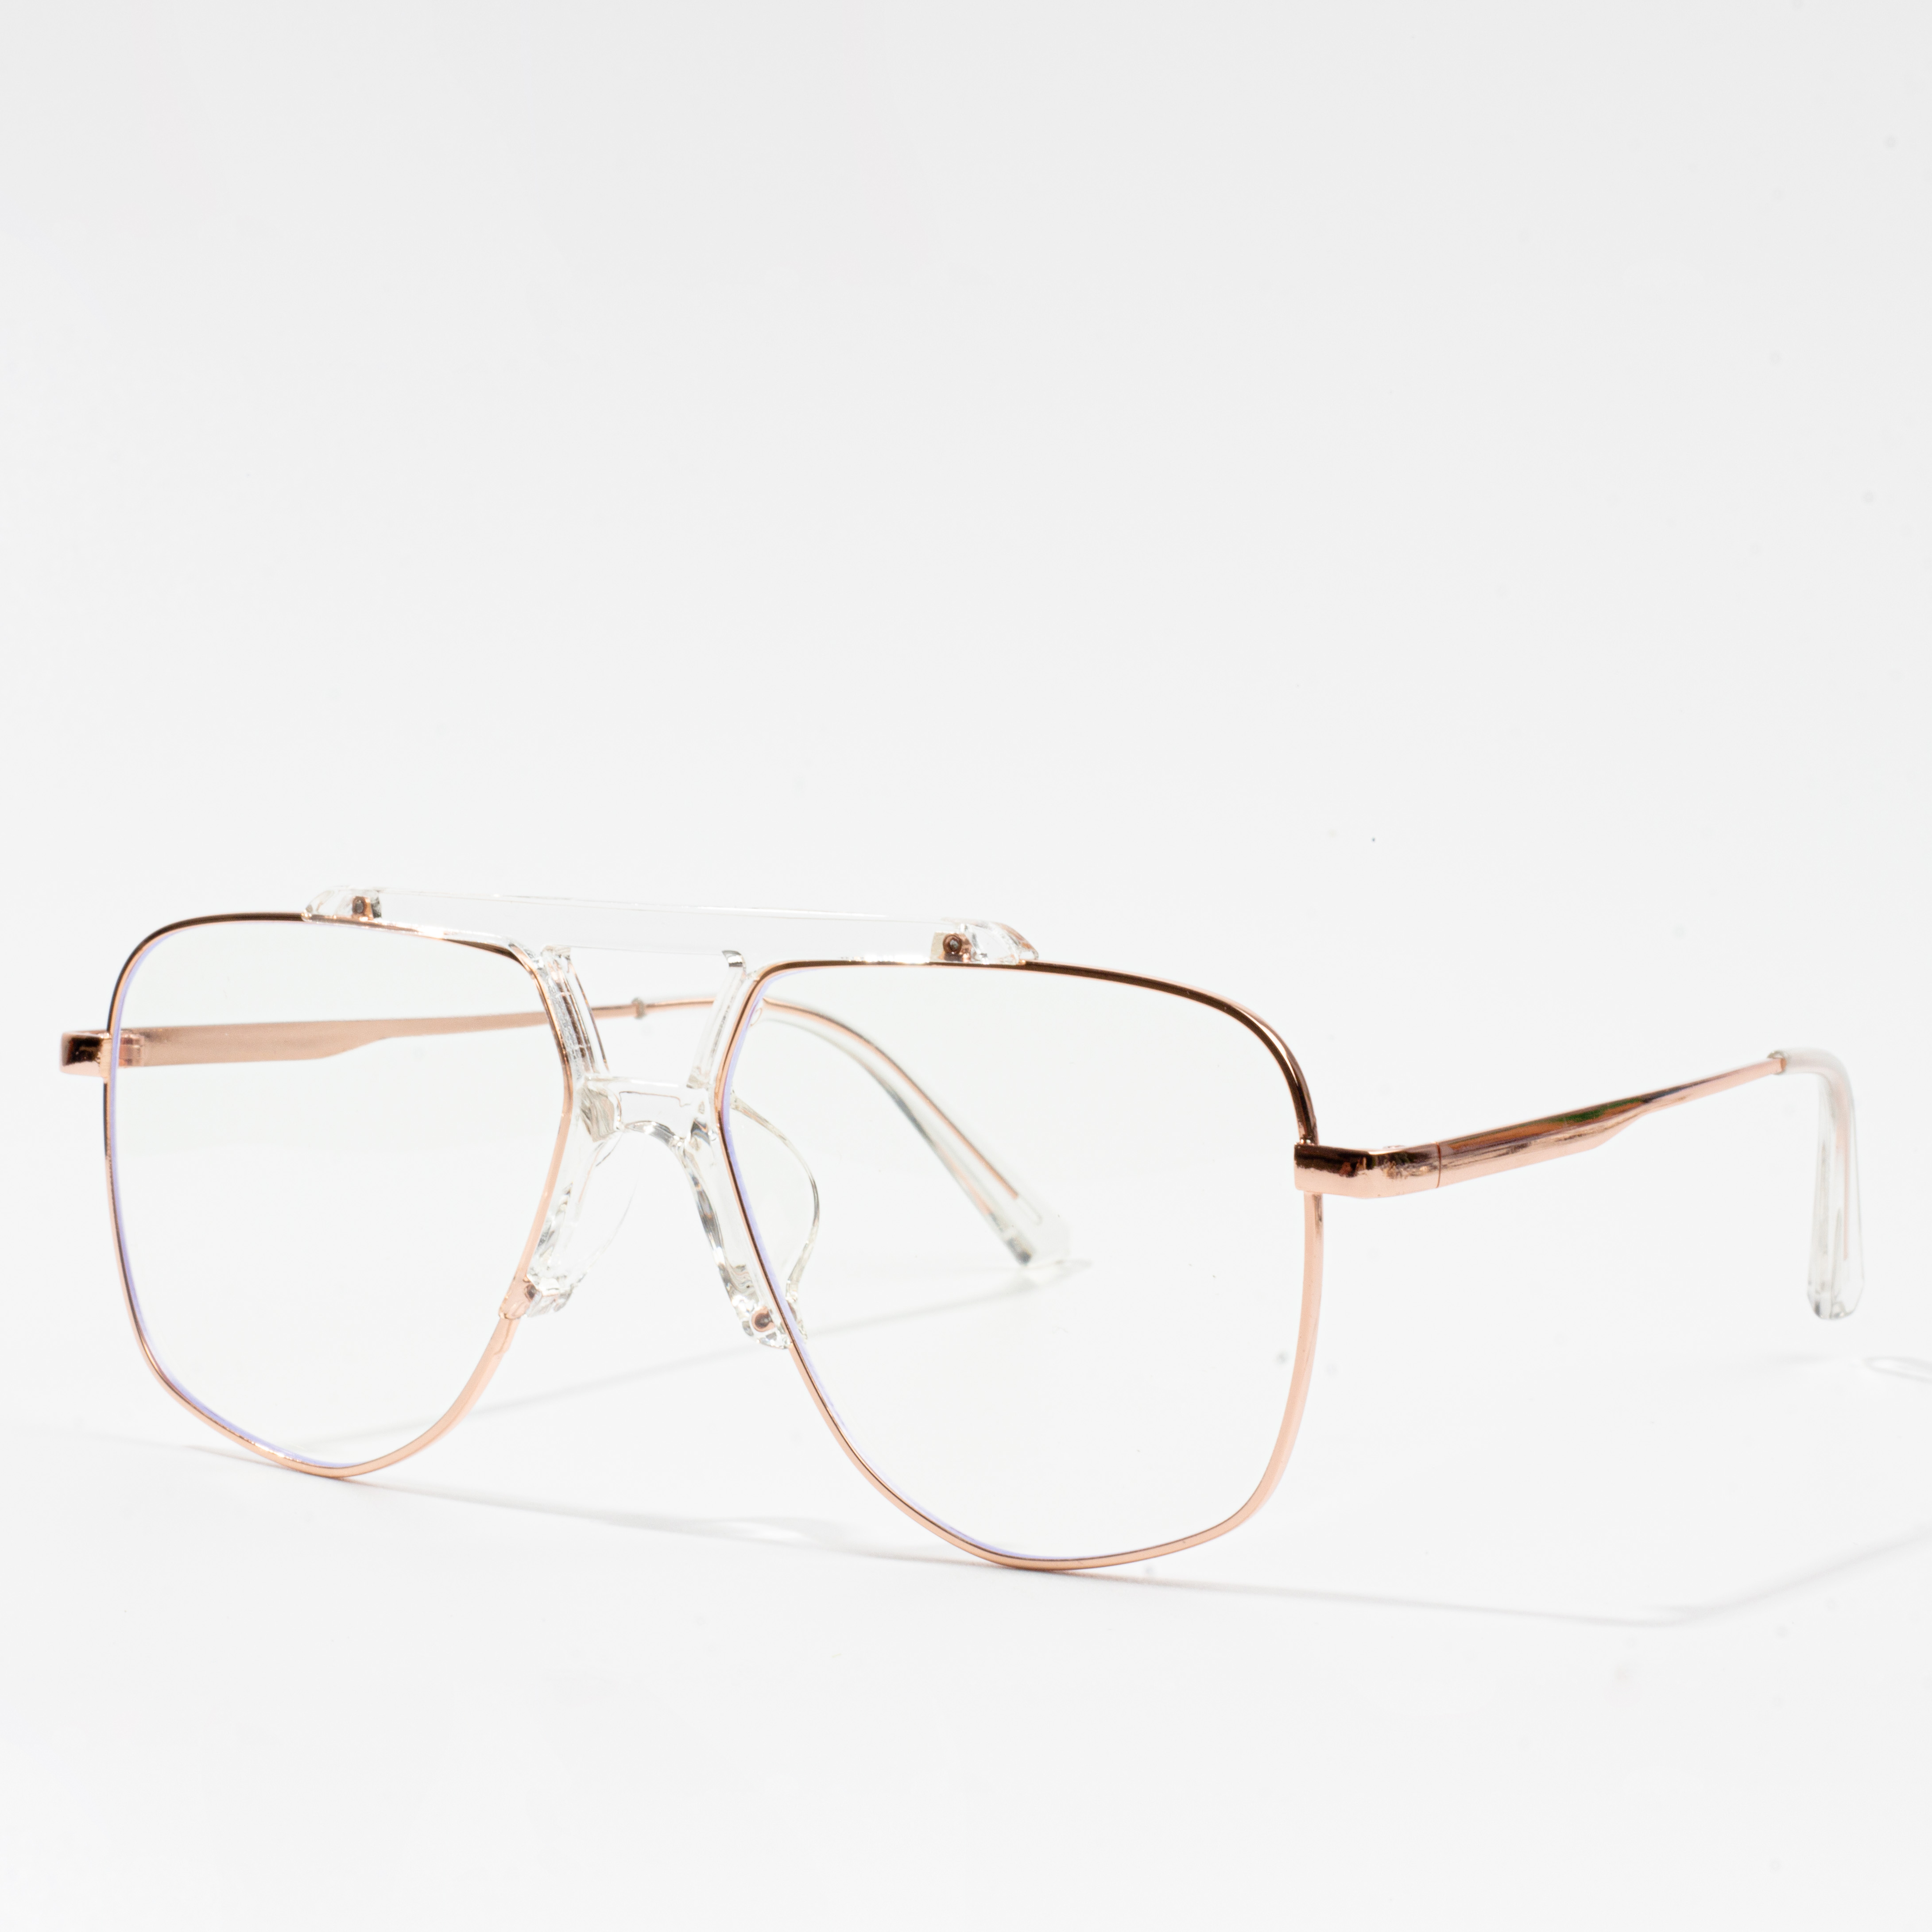 ûngewoane bril frames